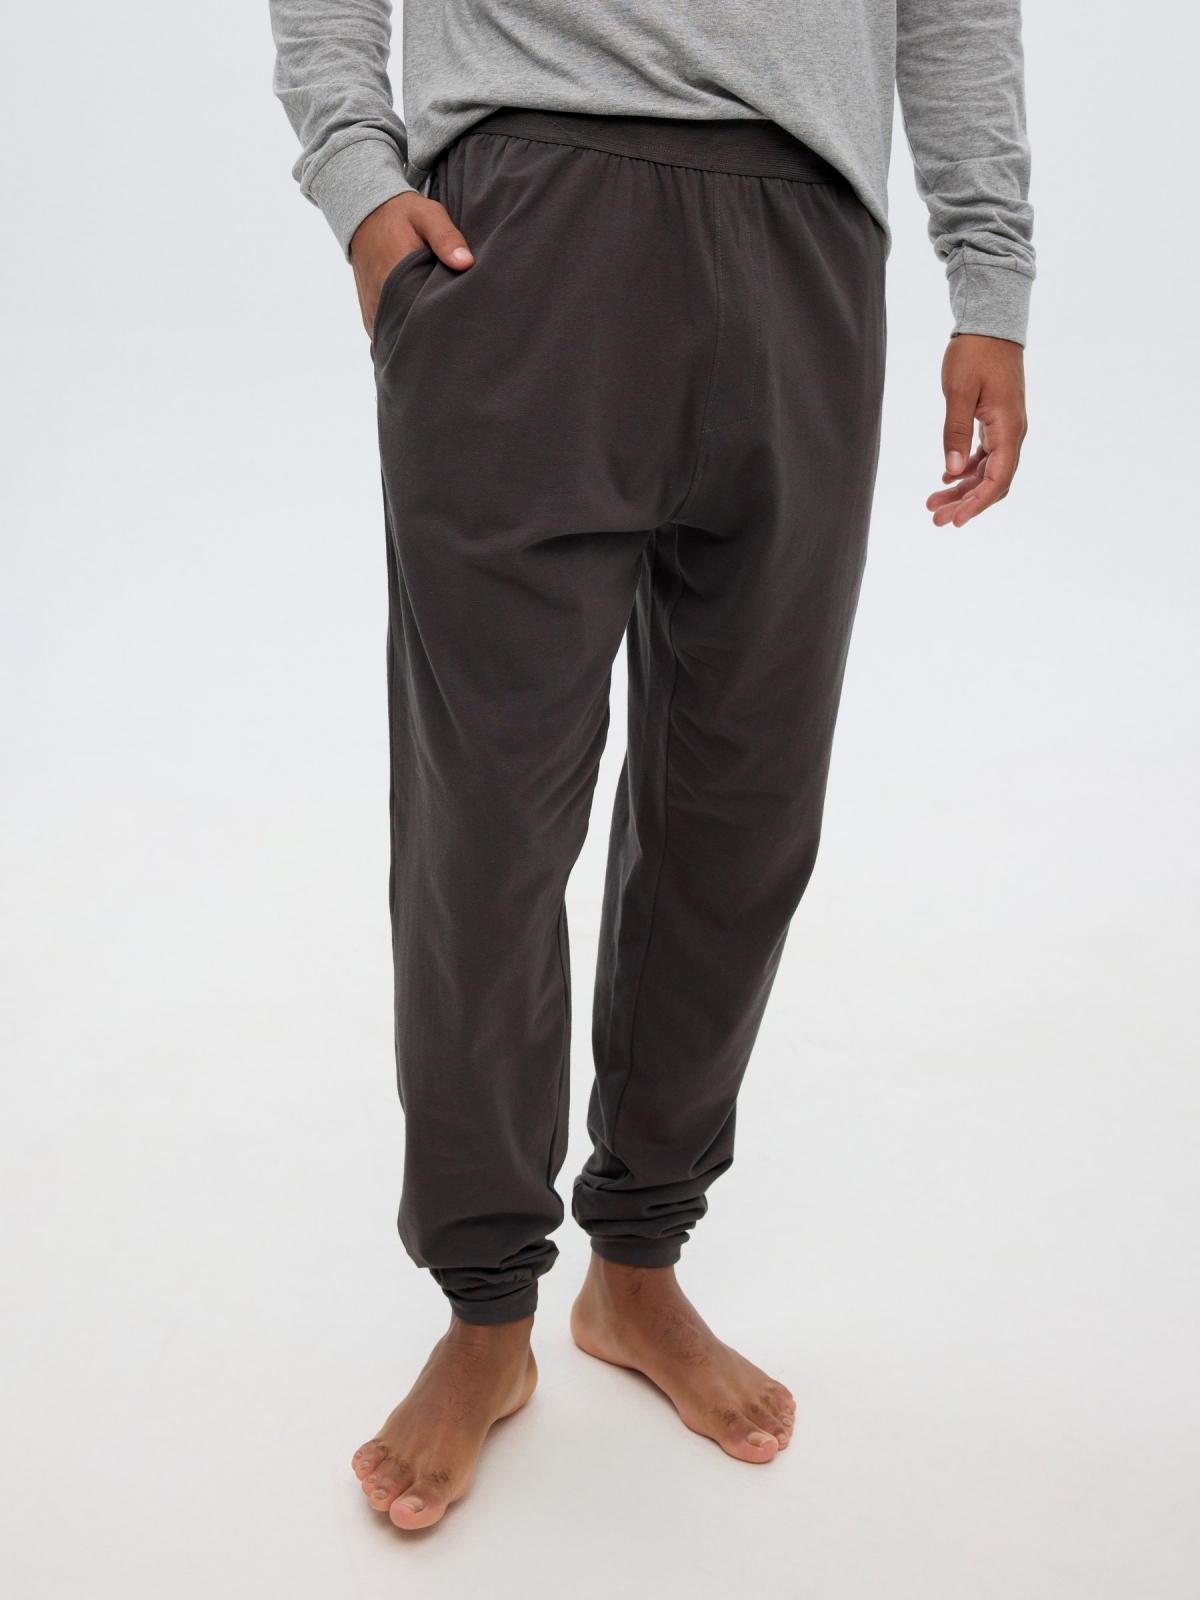 Gray pajamas jogger pants grey detail view